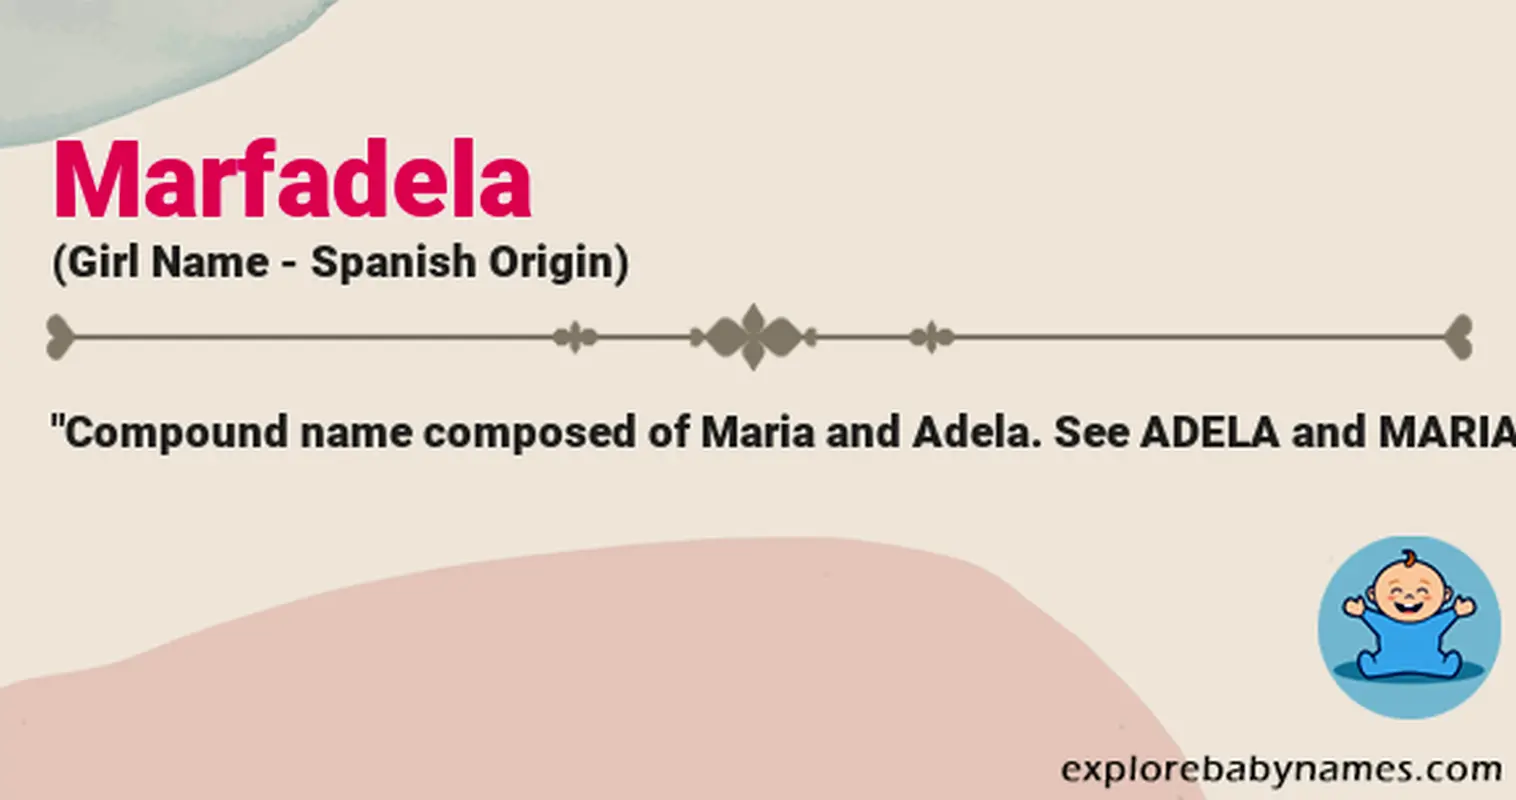 Meaning of Marfadela